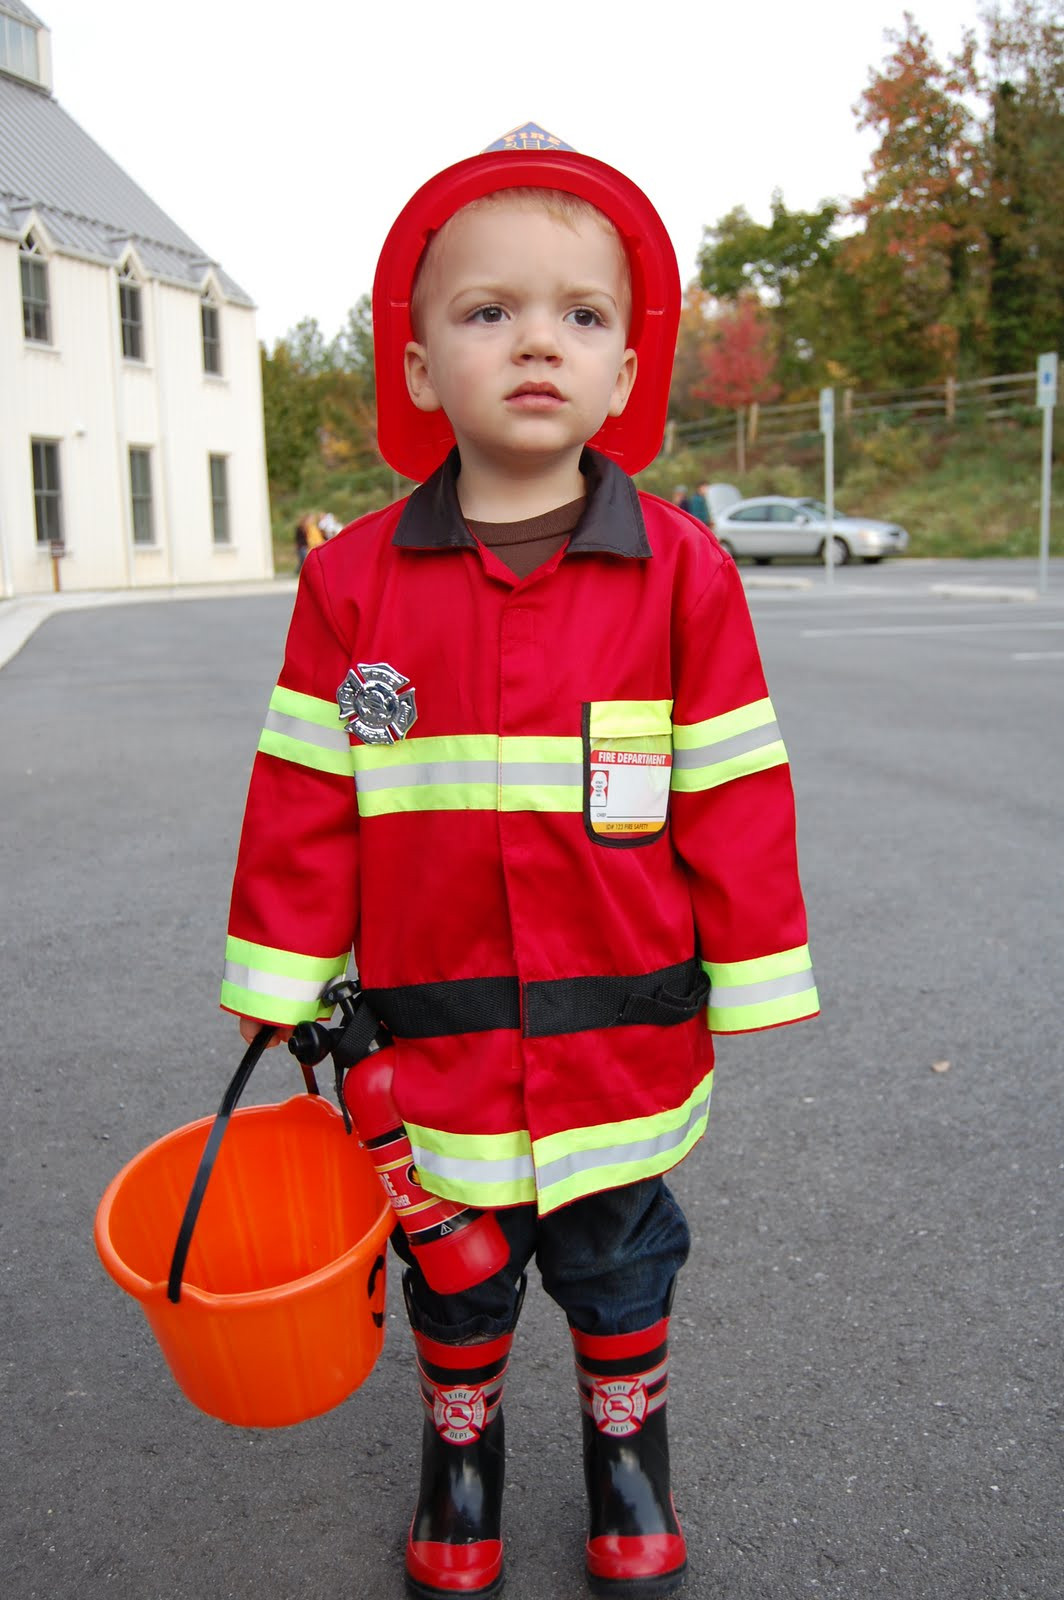 Firefighter Costume DIY
 Firefighter Costumes for Men Women Kids